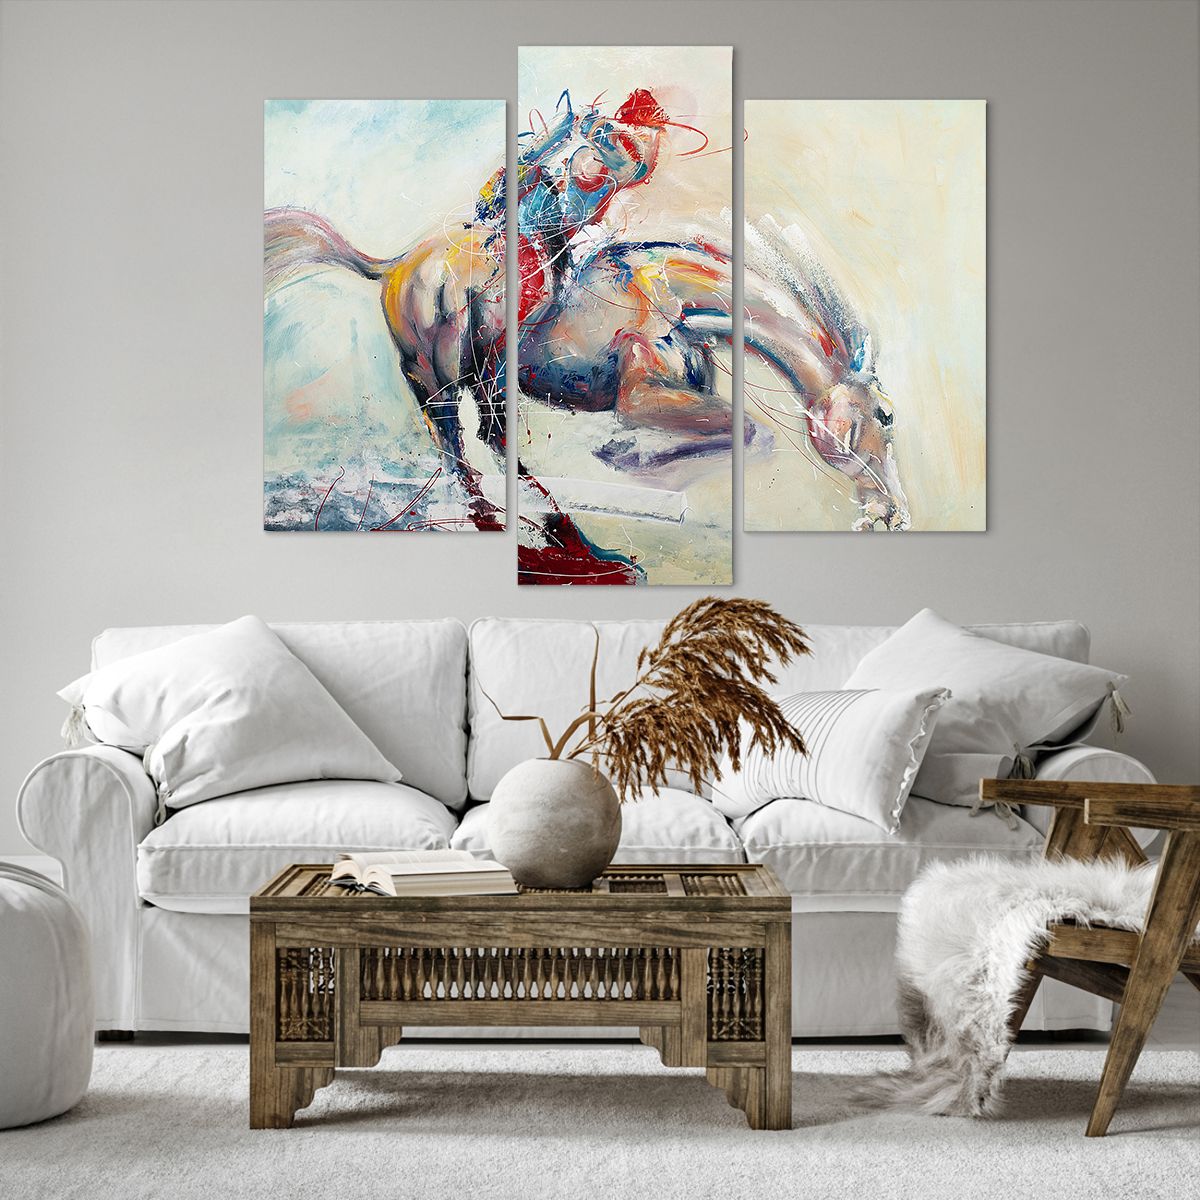 Obrazy na płótnie Zwierzęta, Obrazy na płótnie Koń, Obrazy na płótnie Jeździec, Obrazy na płótnie Jockey, Obrazy na płótnie Sztuka